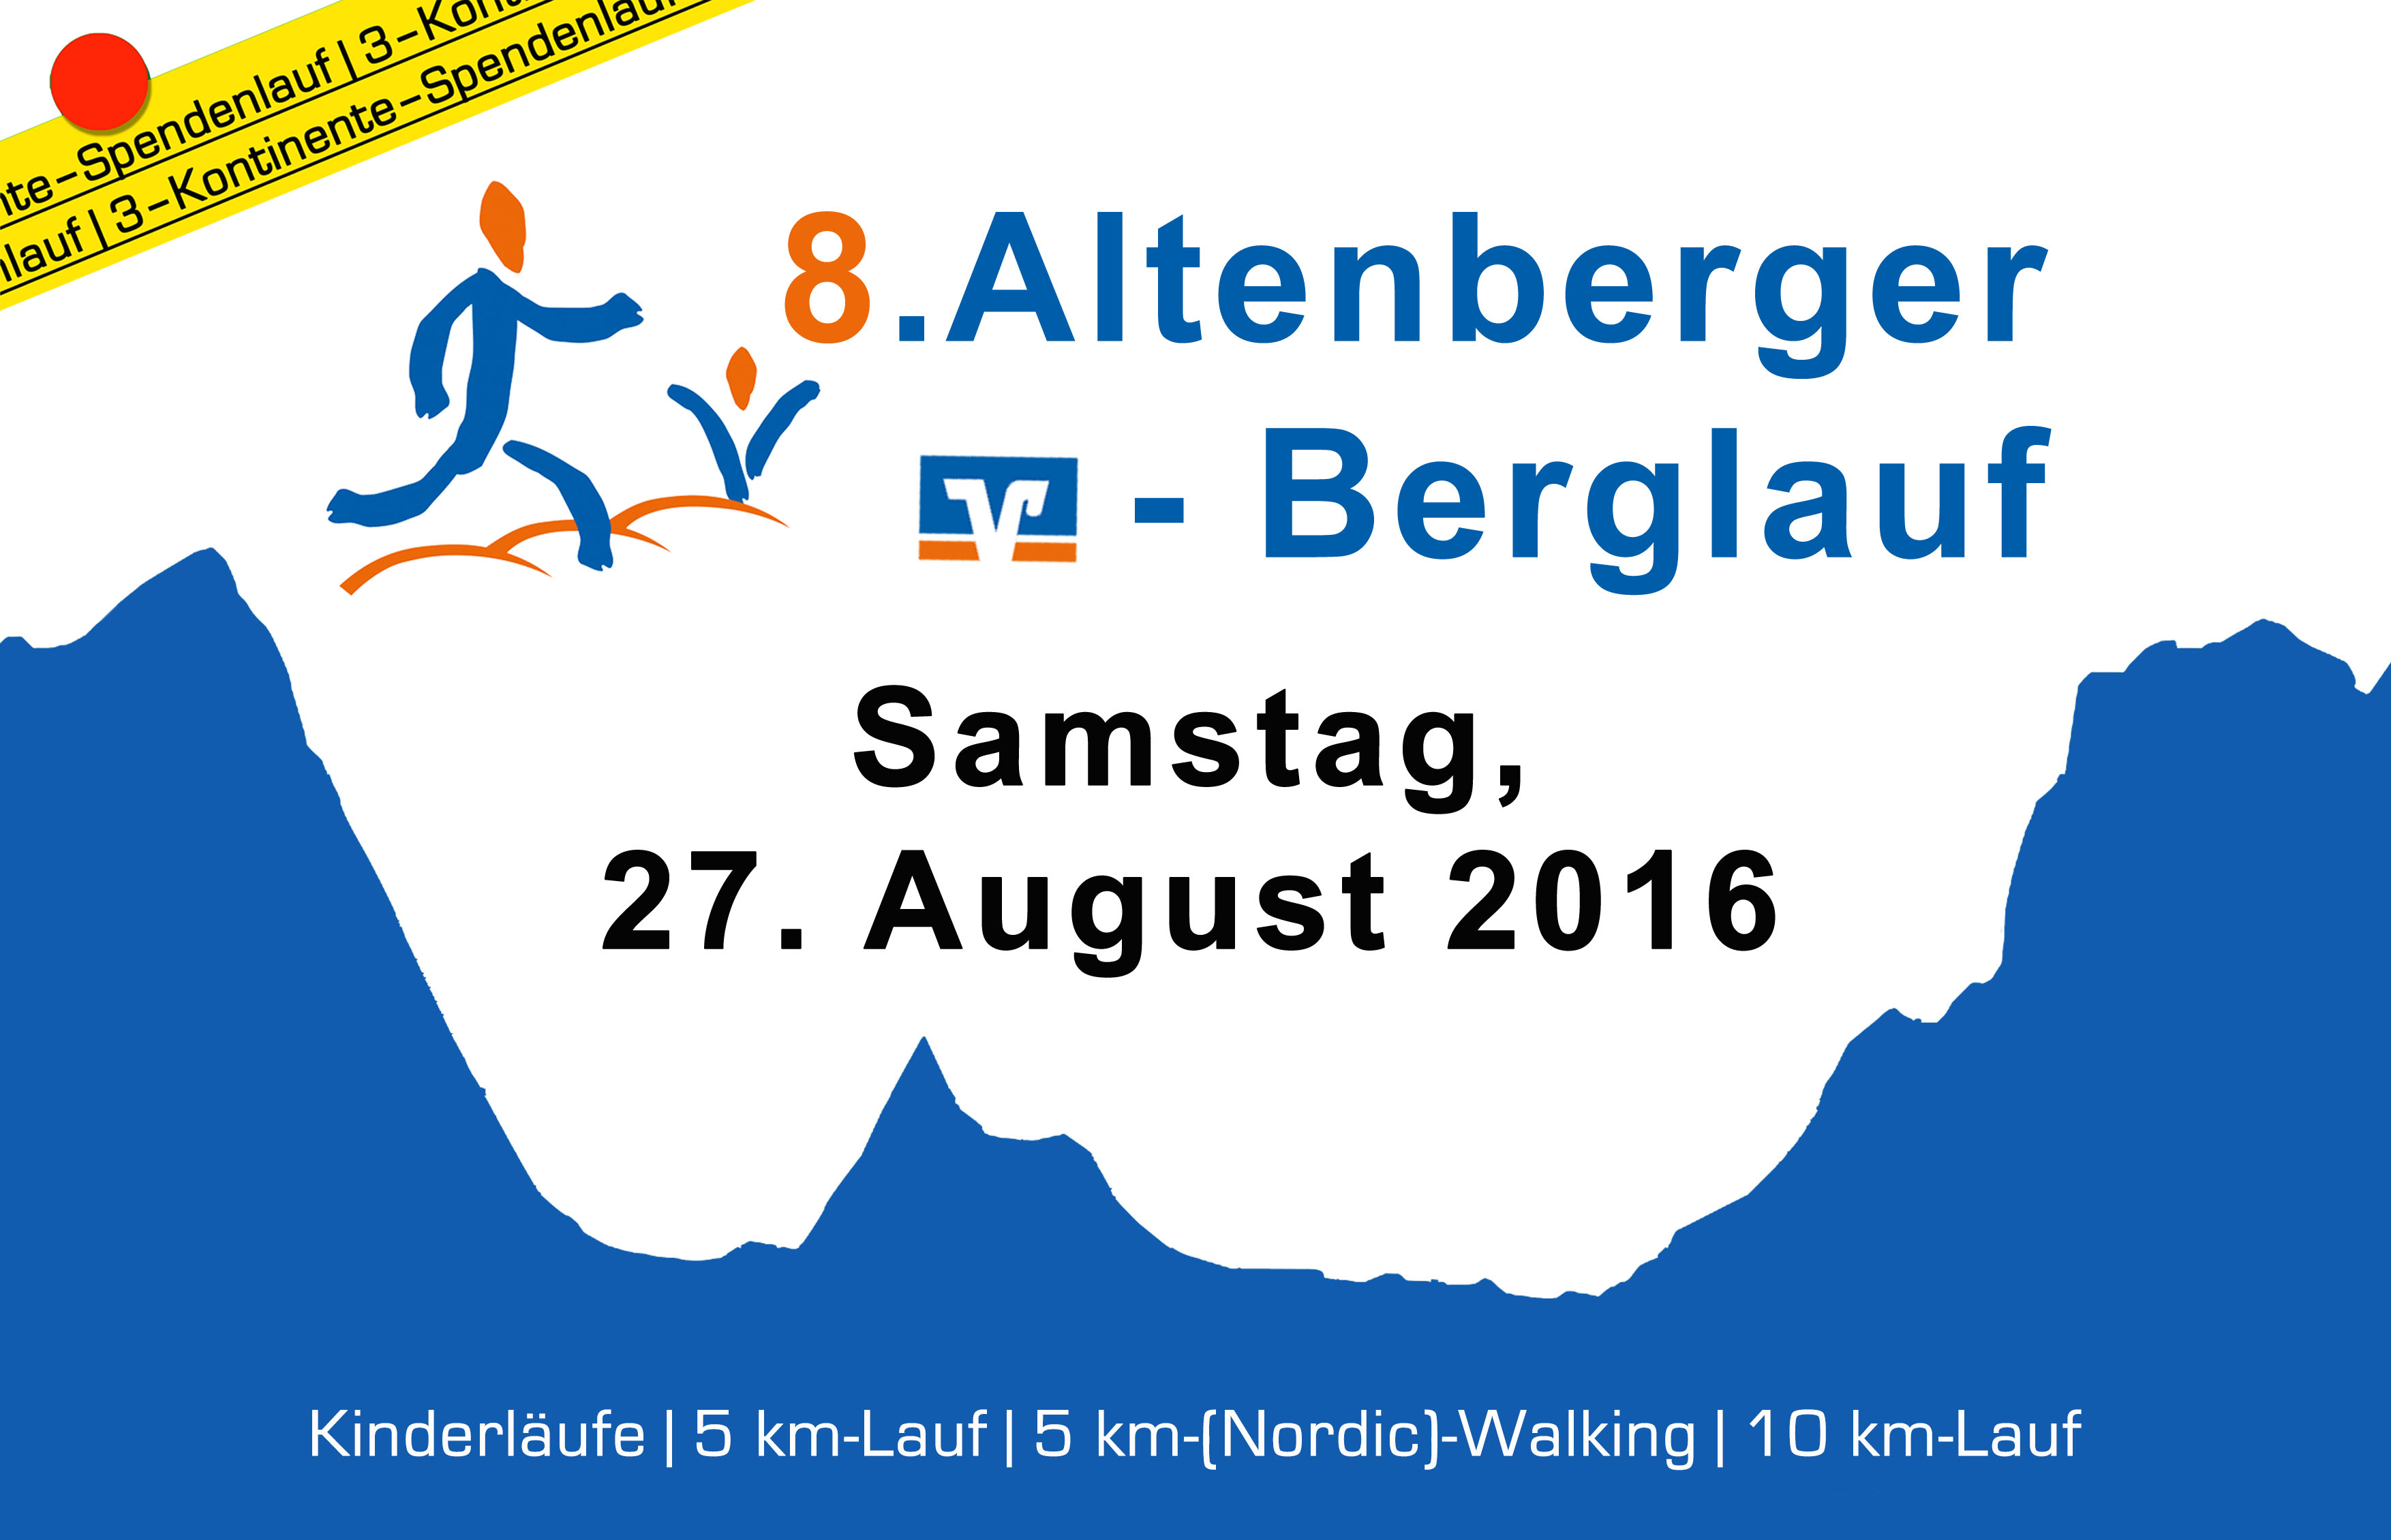 Anmeldung zum 8. Altenberger Berglauf